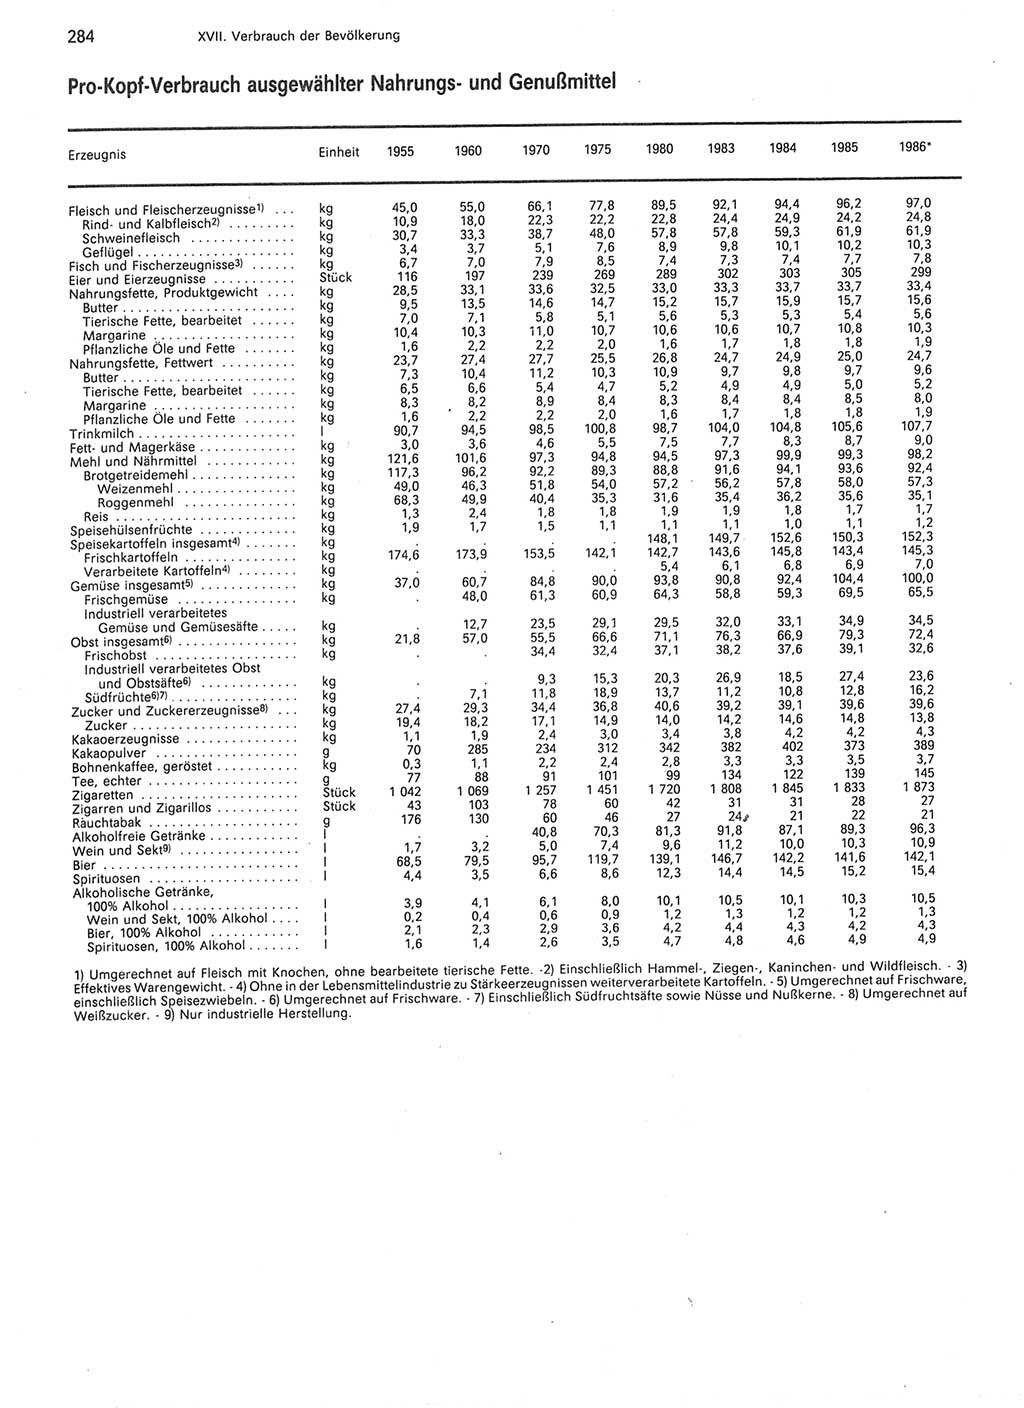 Statistisches Jahrbuch der Deutschen Demokratischen Republik (DDR) 1987, Seite 284 (Stat. Jb. DDR 1987, S. 284)